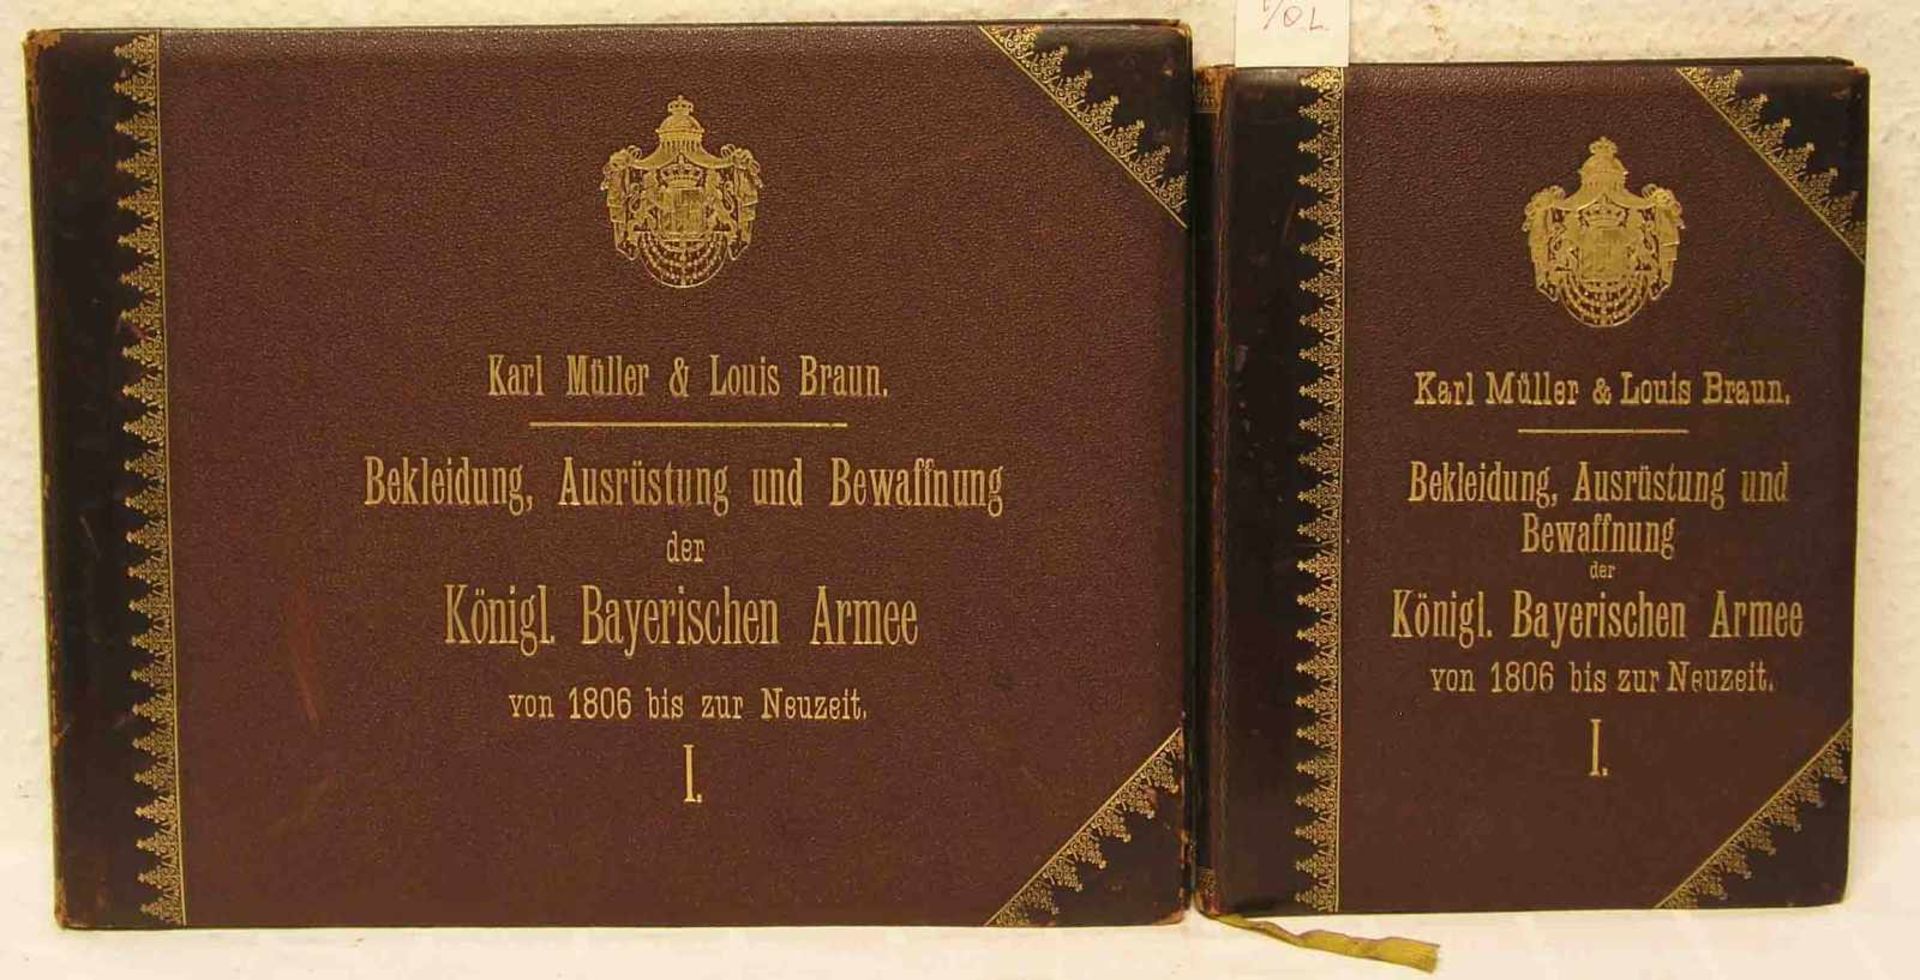 Müller Karl und Louis Braun: "Bekleidung, Ausrüstung und Bewaffnung der Königl.Bayerischen Armee von